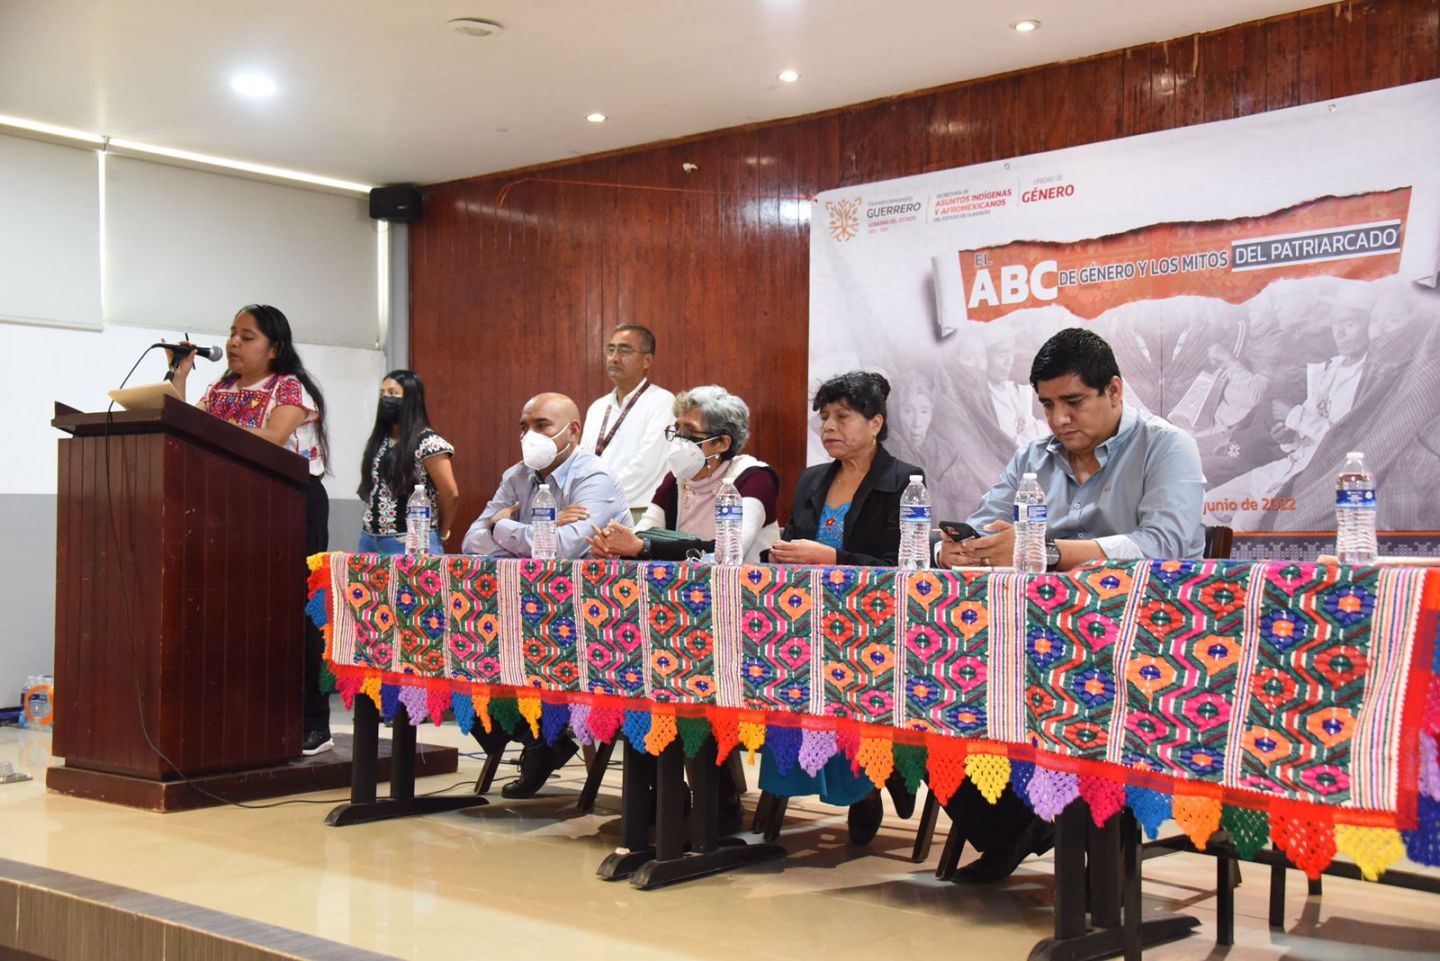 La SAIA y la UAGro organizaron la conferencia ’El ABC de género y los mitos del Patriarcado’
